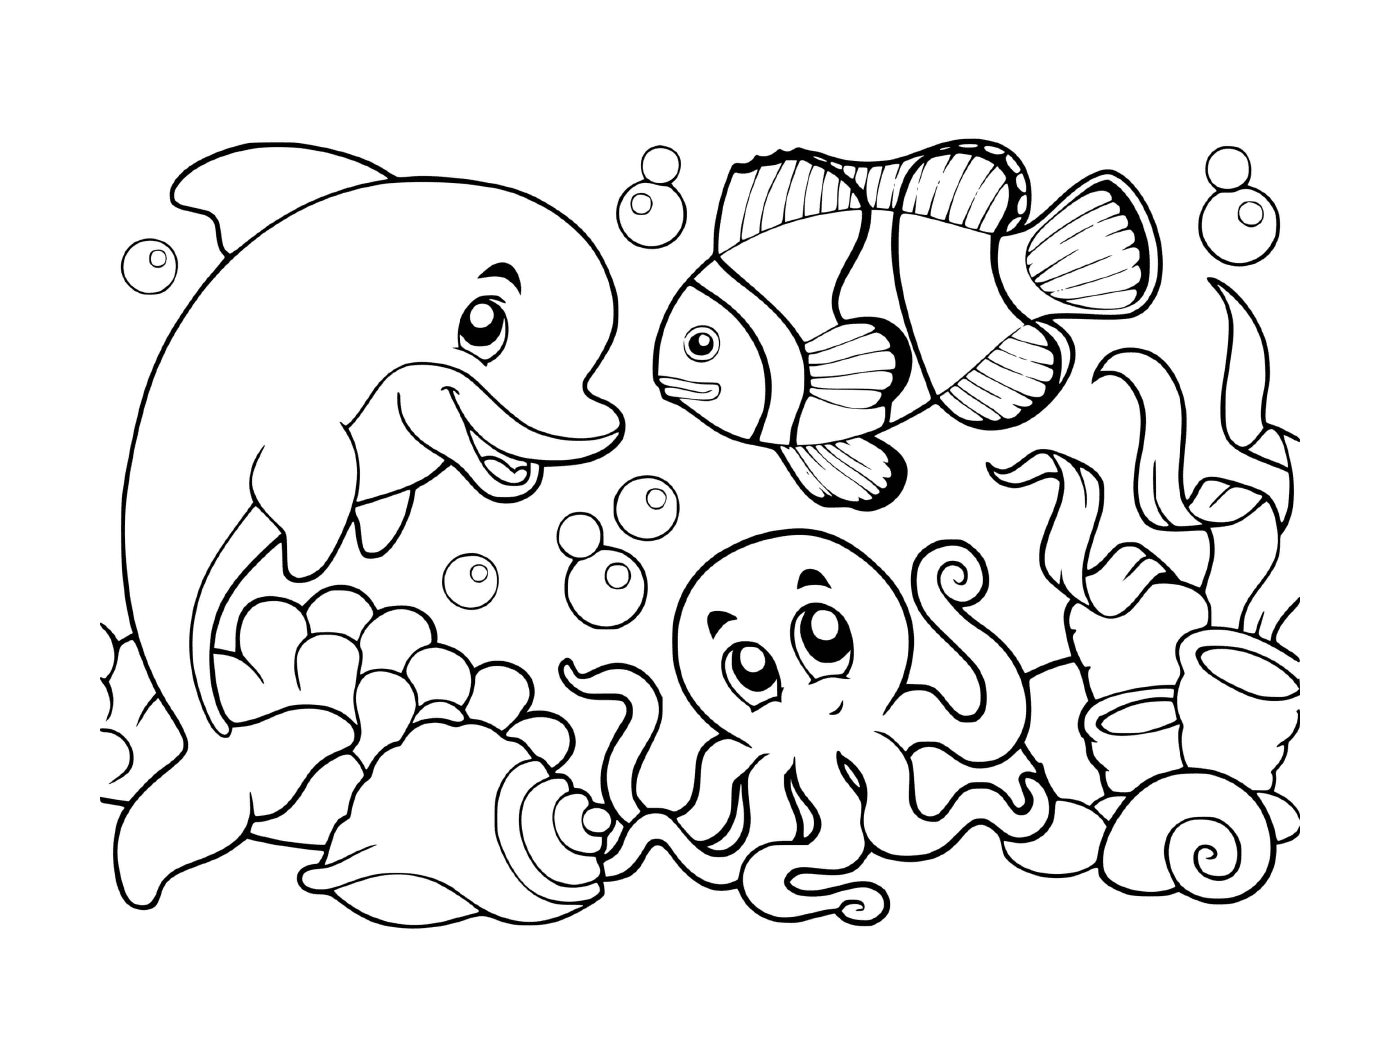  подводная сцена с рыбой, моллюсками и осьминогом 